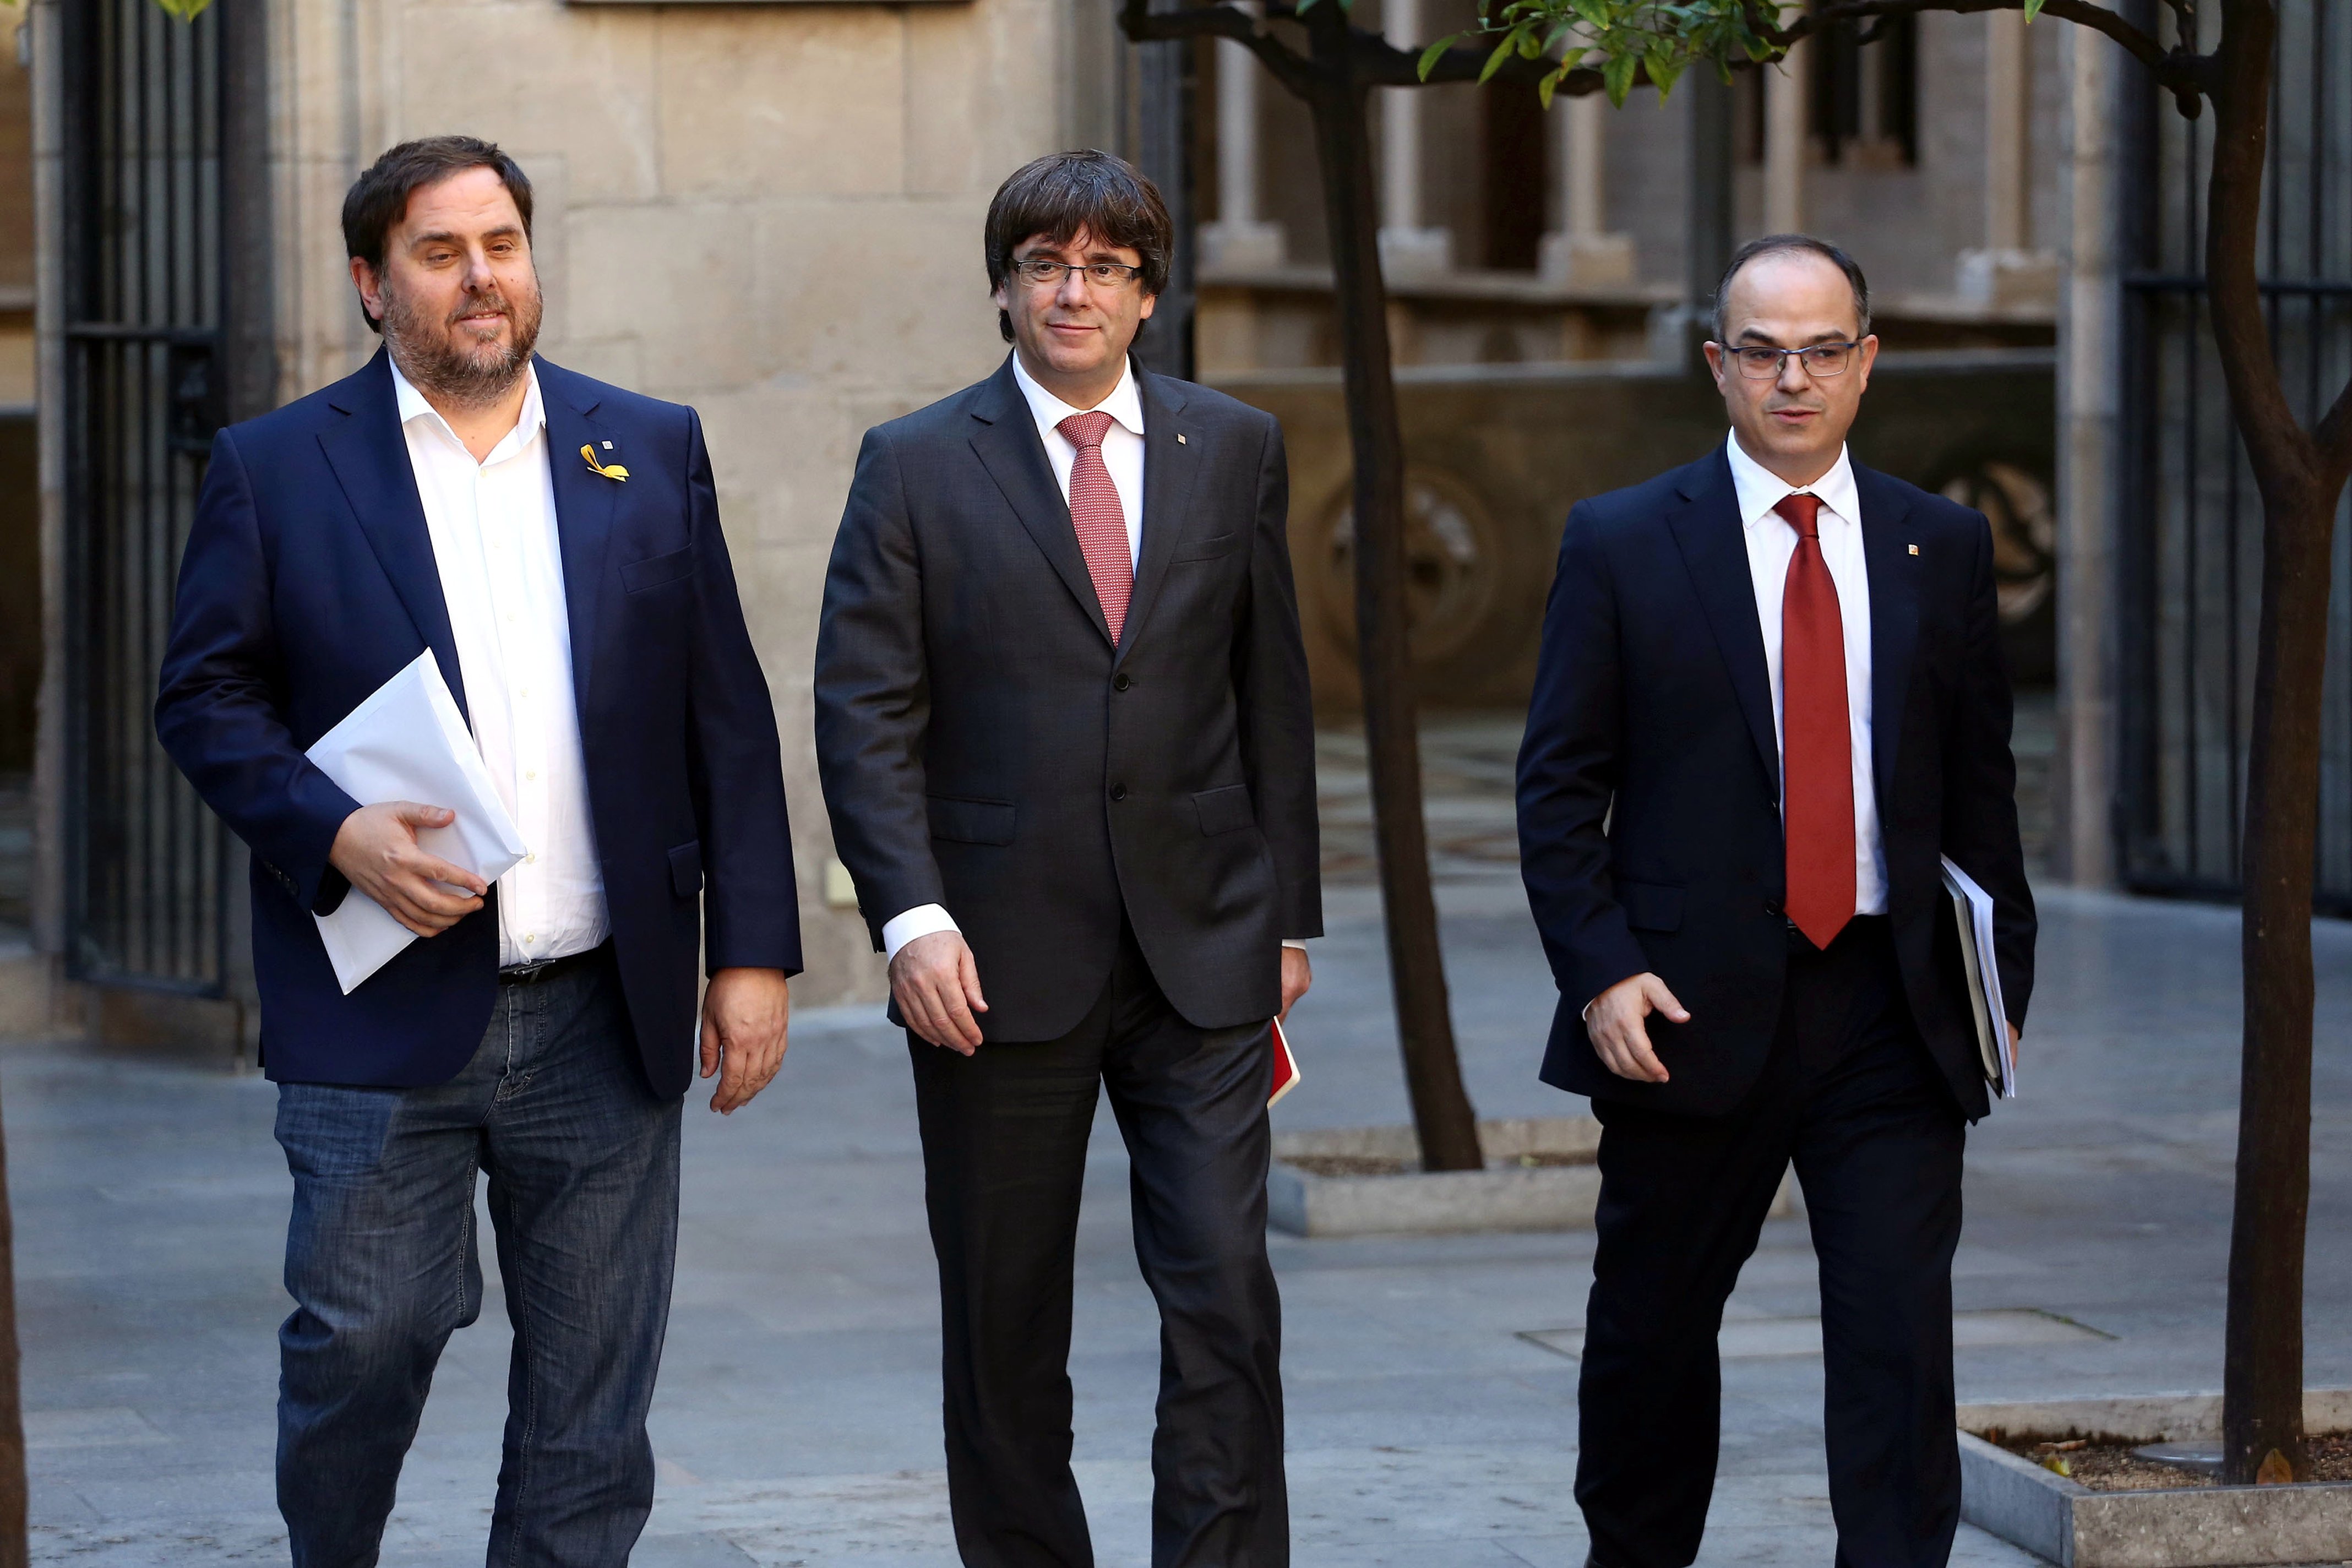 CIS europeas: El PSOE gana y Junqueras y Puigdemont salen escogidos